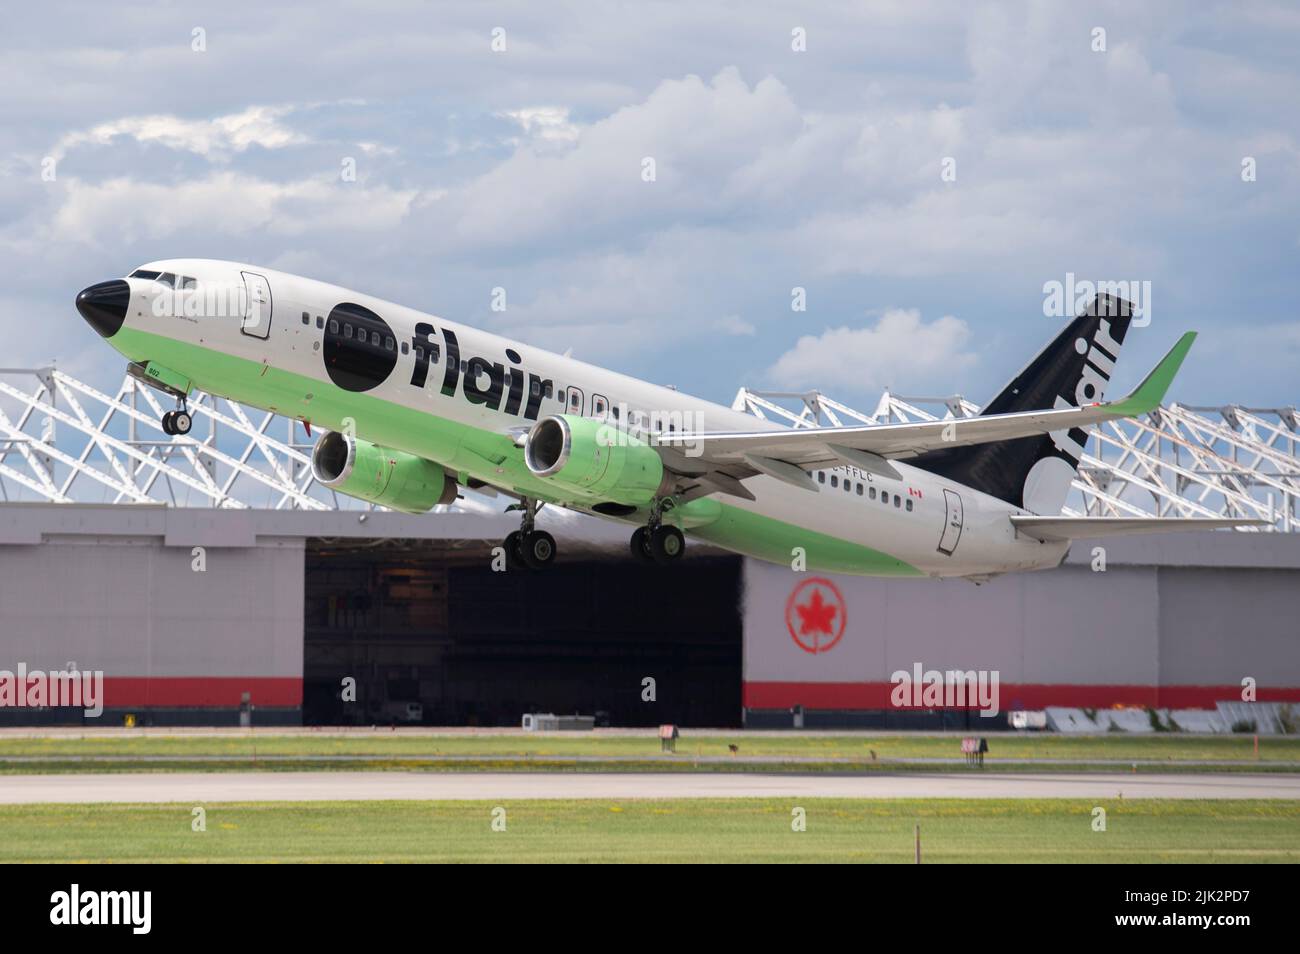 Un avion de la compagnie aérienne Flair Airlines prend son envol à l'aéroport Trudeau de Montréal, Québec, Canada. Banque D'Images